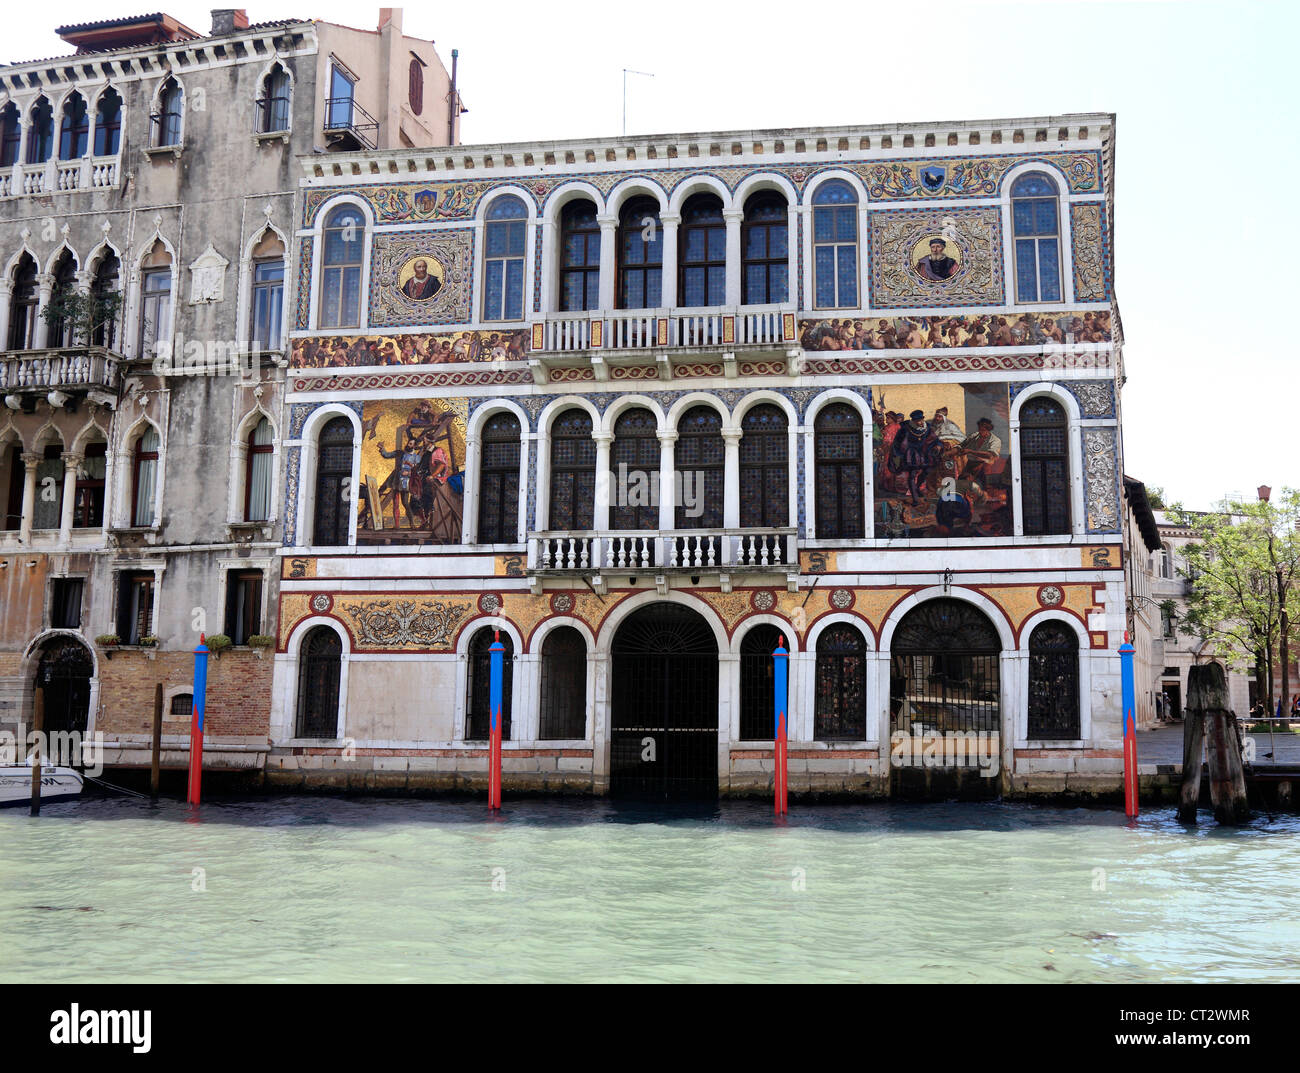 Bâtiment magnifiquement décorées sur le Grand Canal à Venise en Italie, avec des peintures et des carreaux de céramique. Banque D'Images